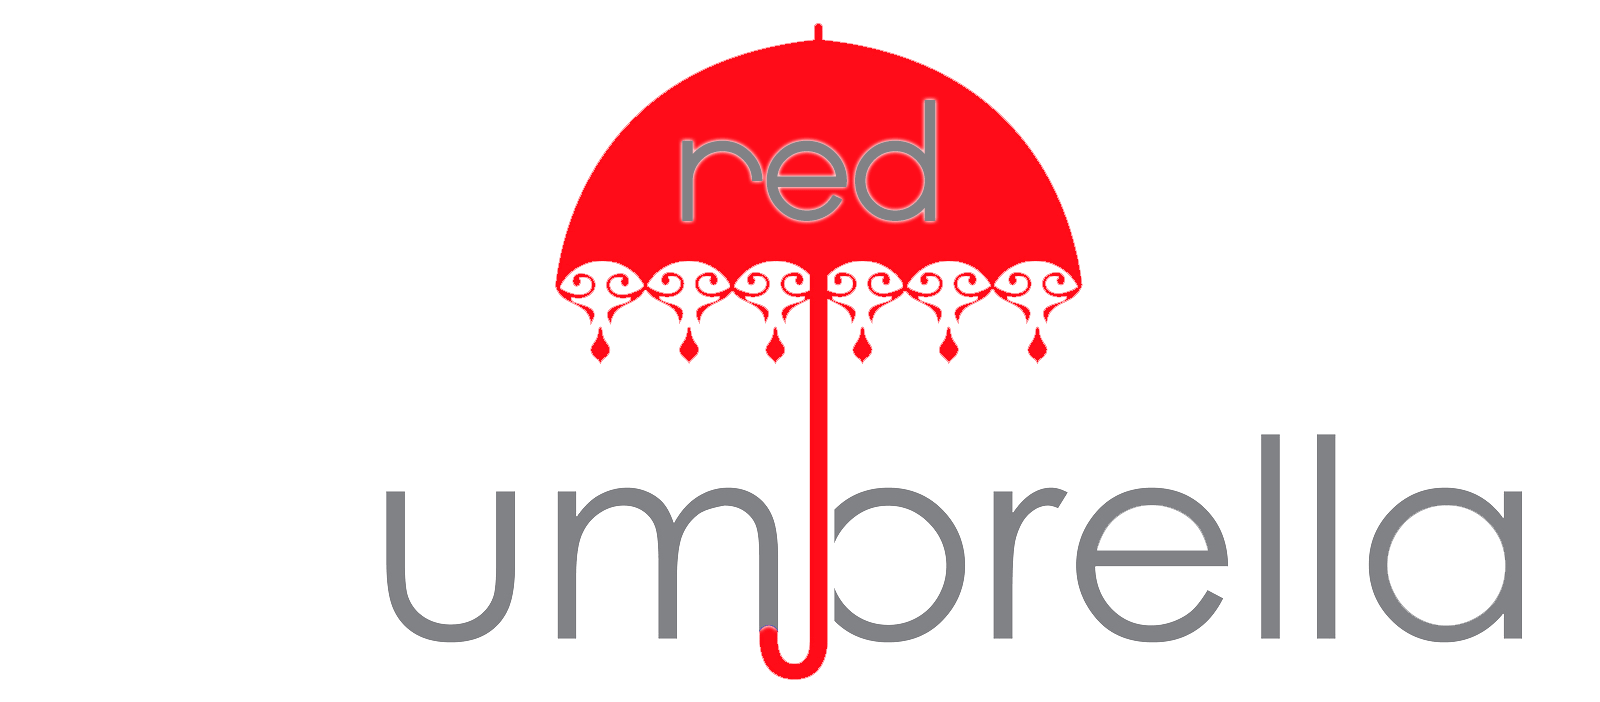 Red Umbrella Logo - Red umbrella logo.PNG